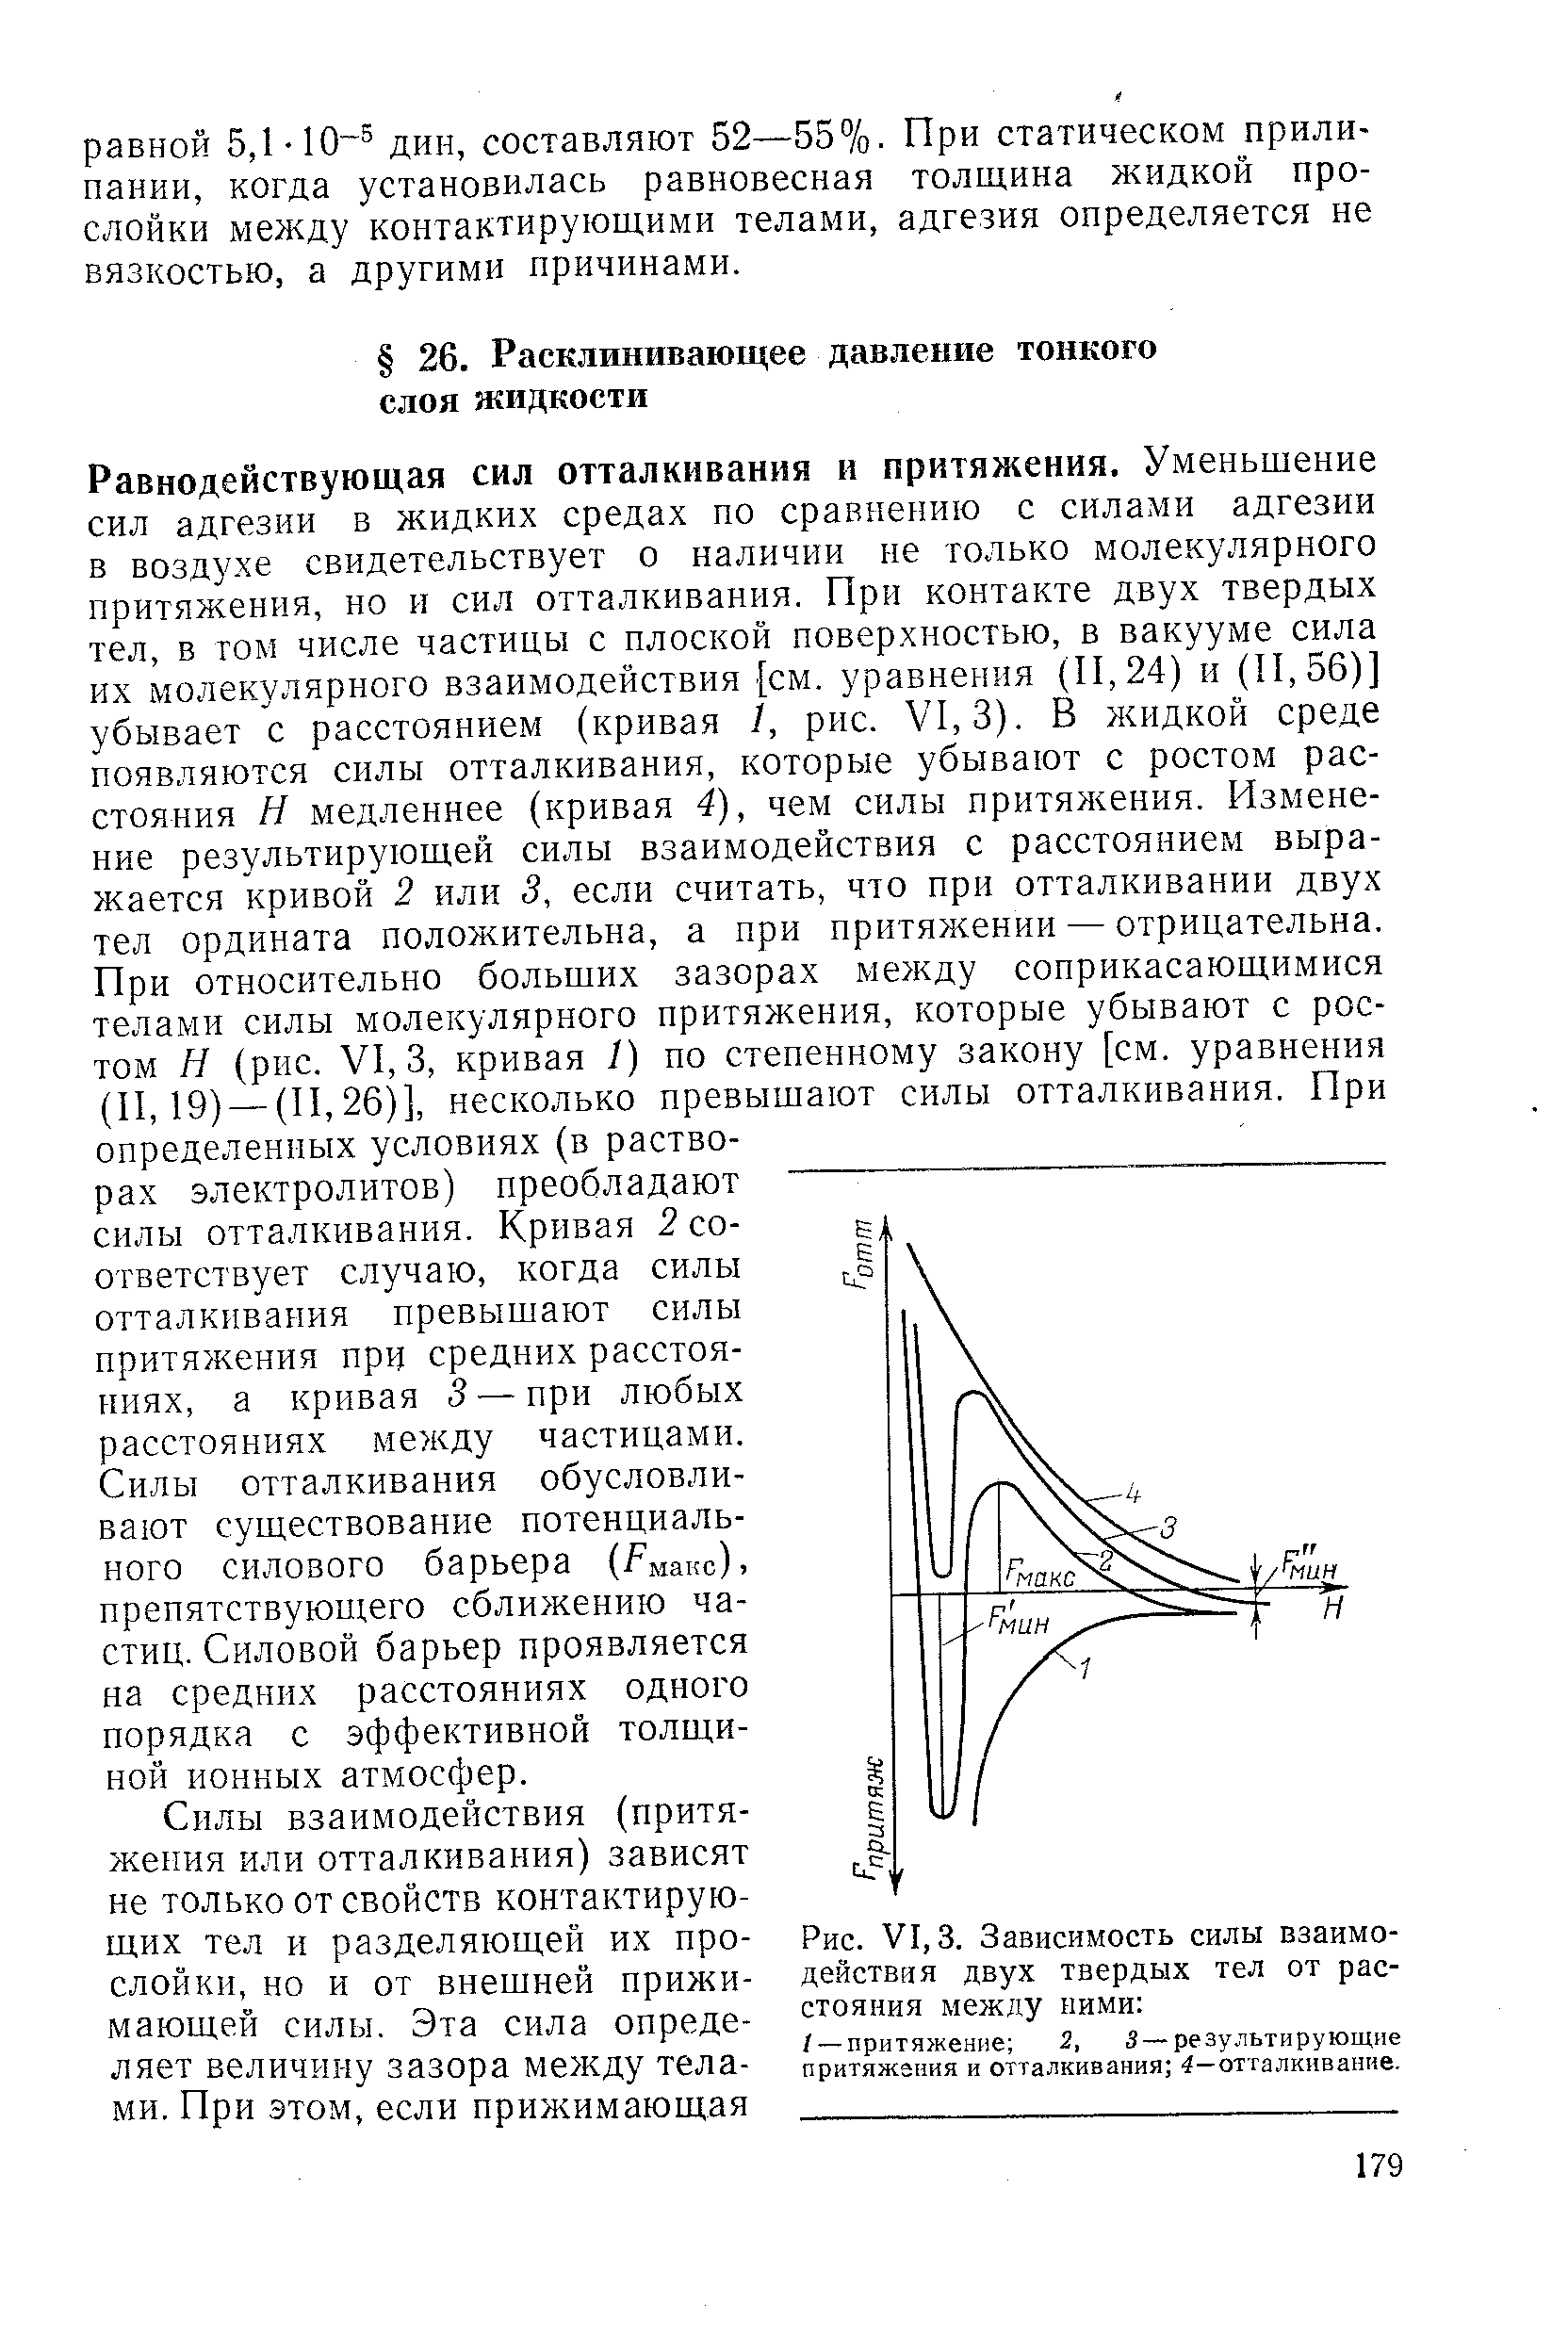 Рис. VI, 3. Зависимость <a href="/info/19293">силы взаимодействия</a> двух твердых тел от расстояния между ними 
